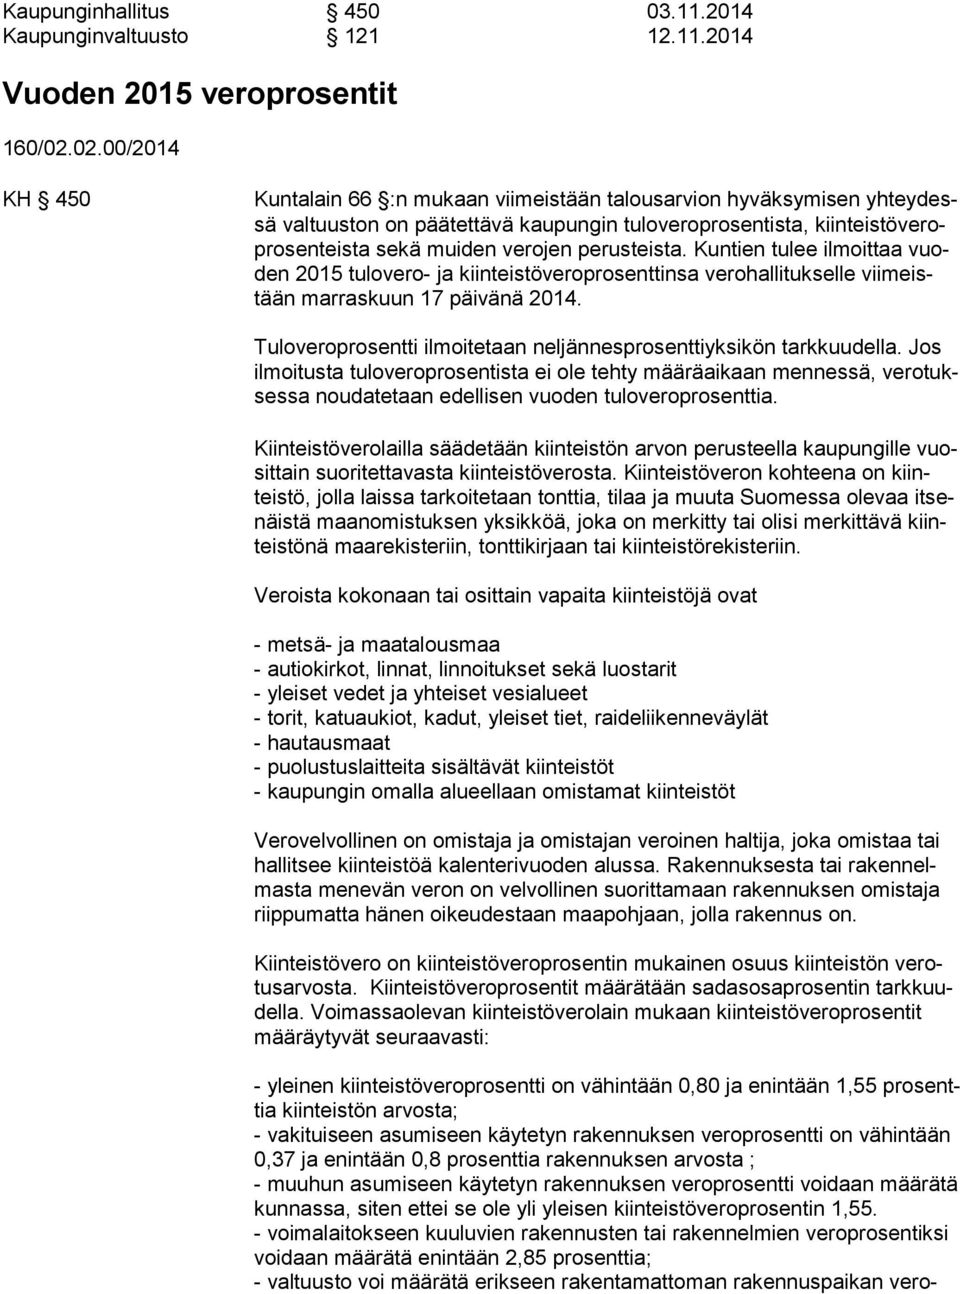 perusteista. Kuntien tulee ilmoittaa vuoden 2015 tulovero- ja kiinteistöveroprosenttinsa verohallitukselle viimeistään marraskuun 17 päivänä 2014.